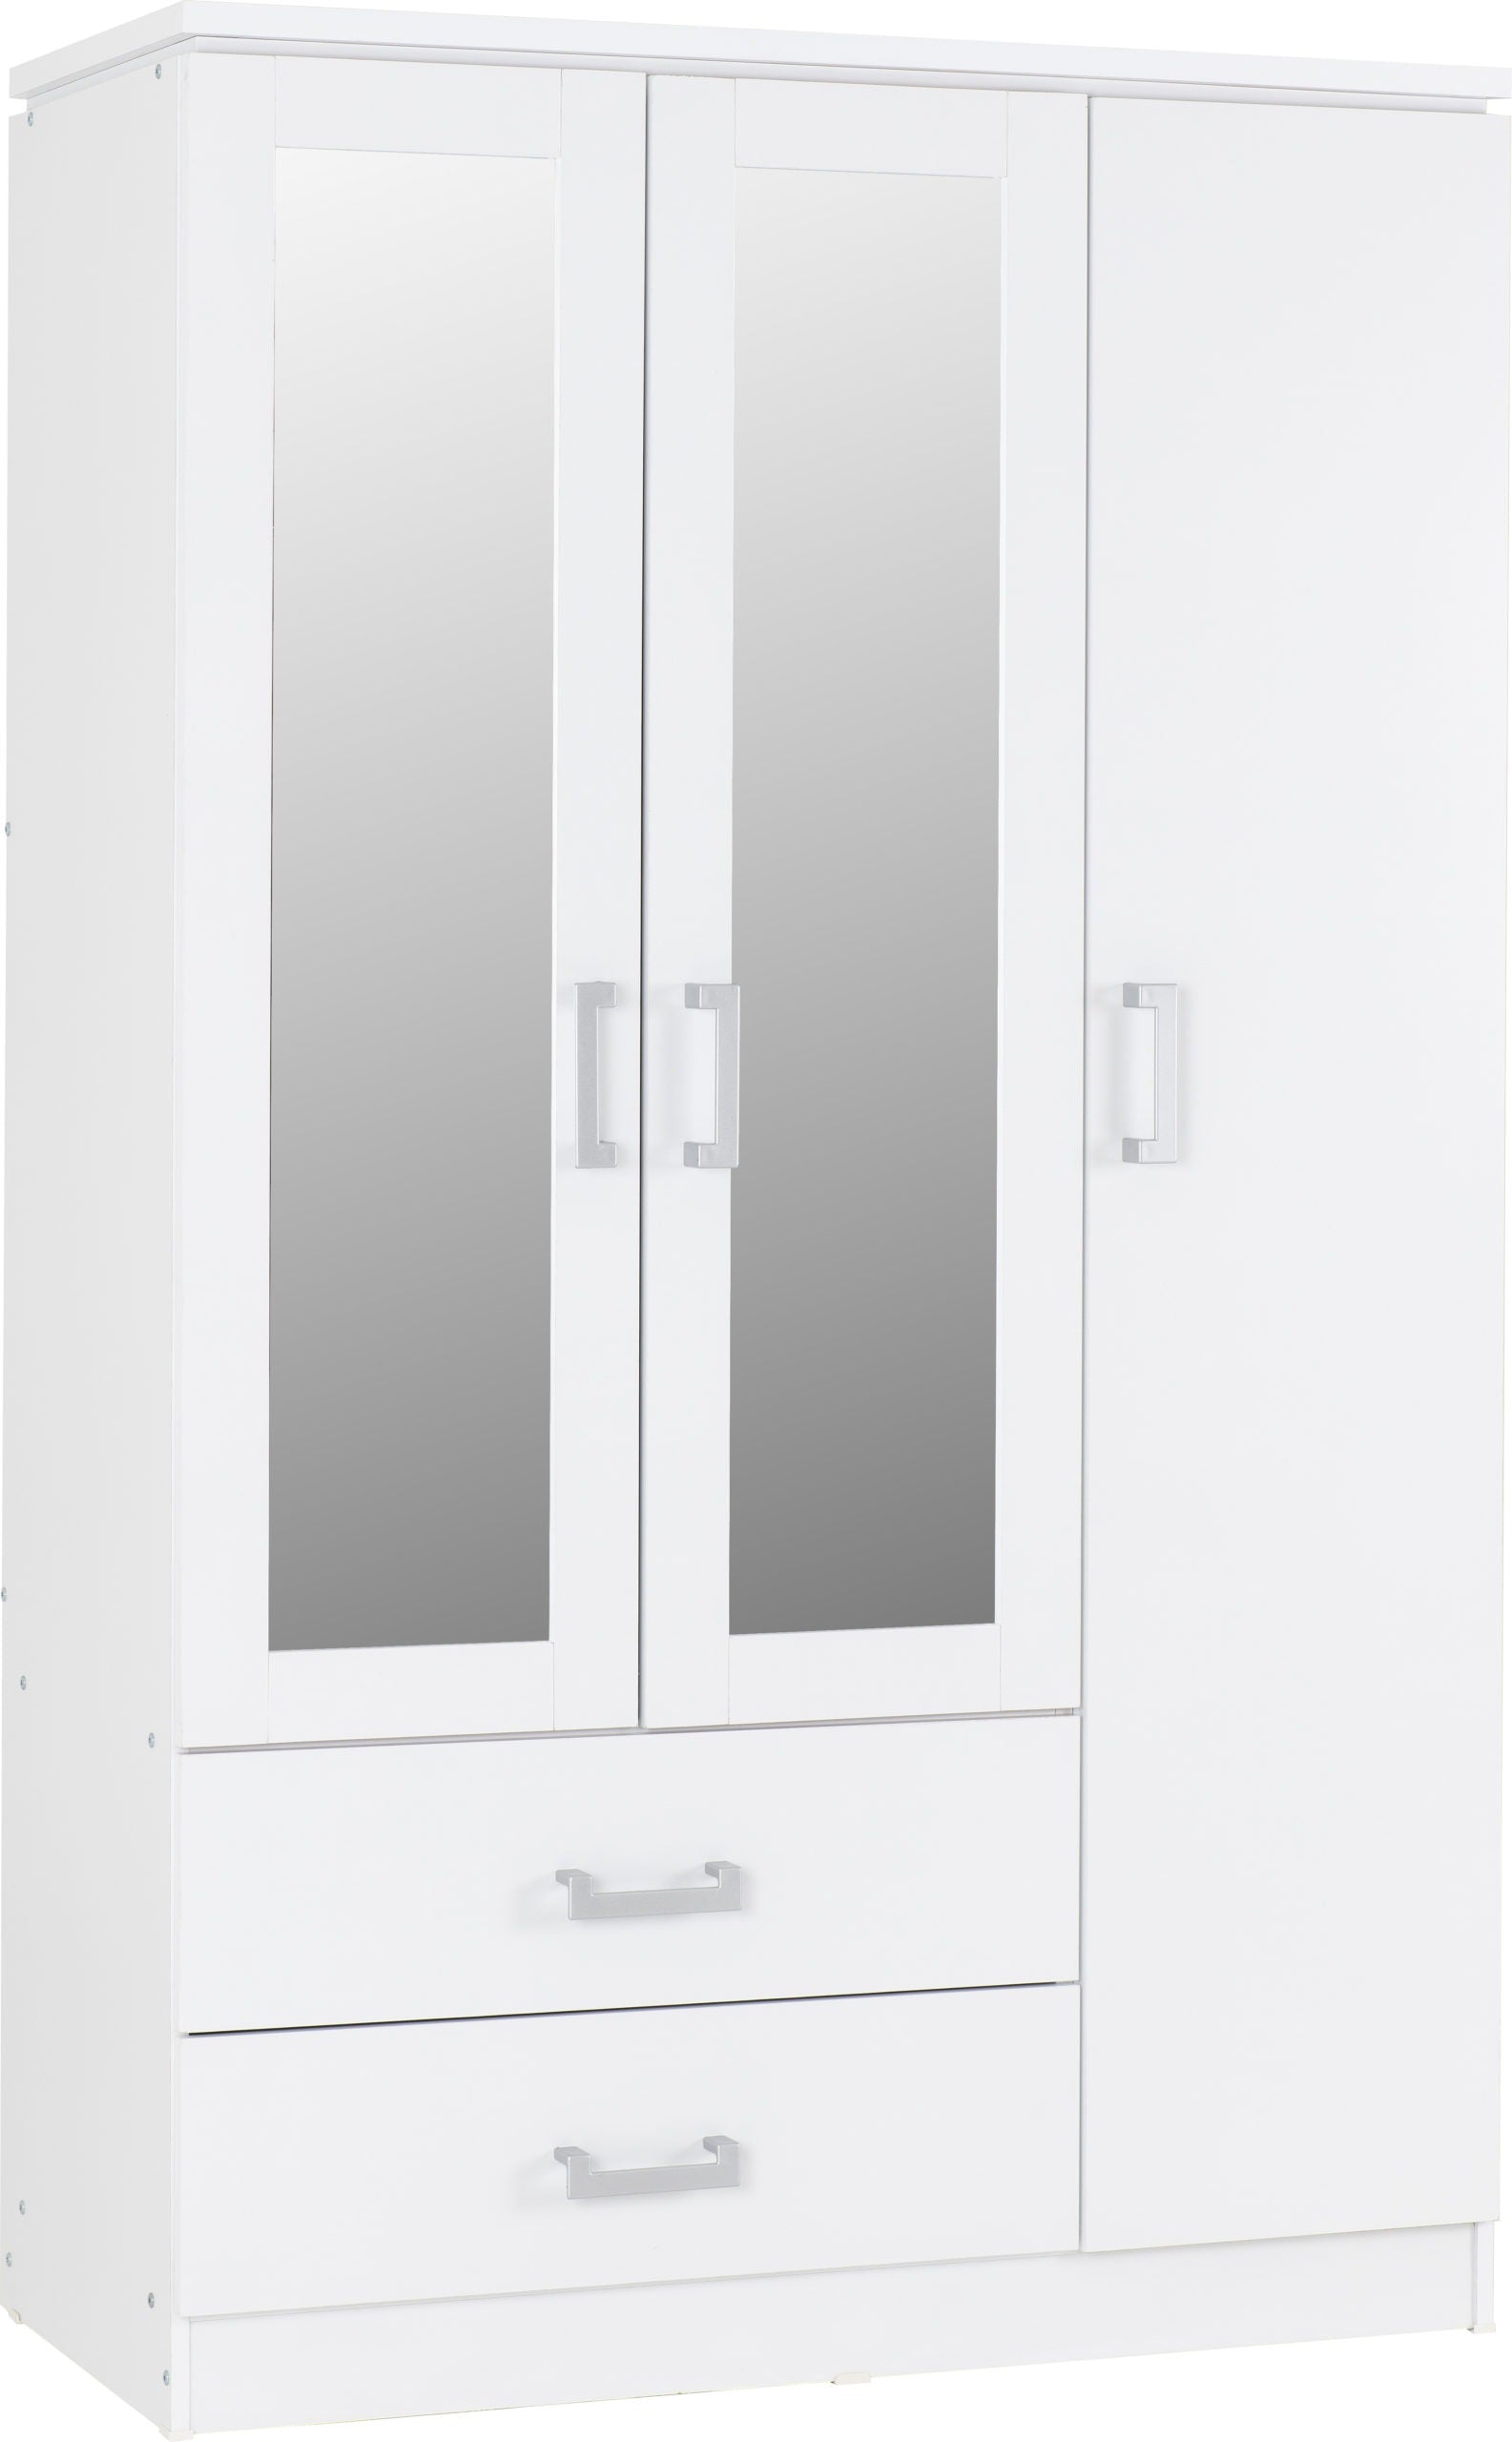 Charles 3 Door 2 Drawer Mirrored Wardrobe - White